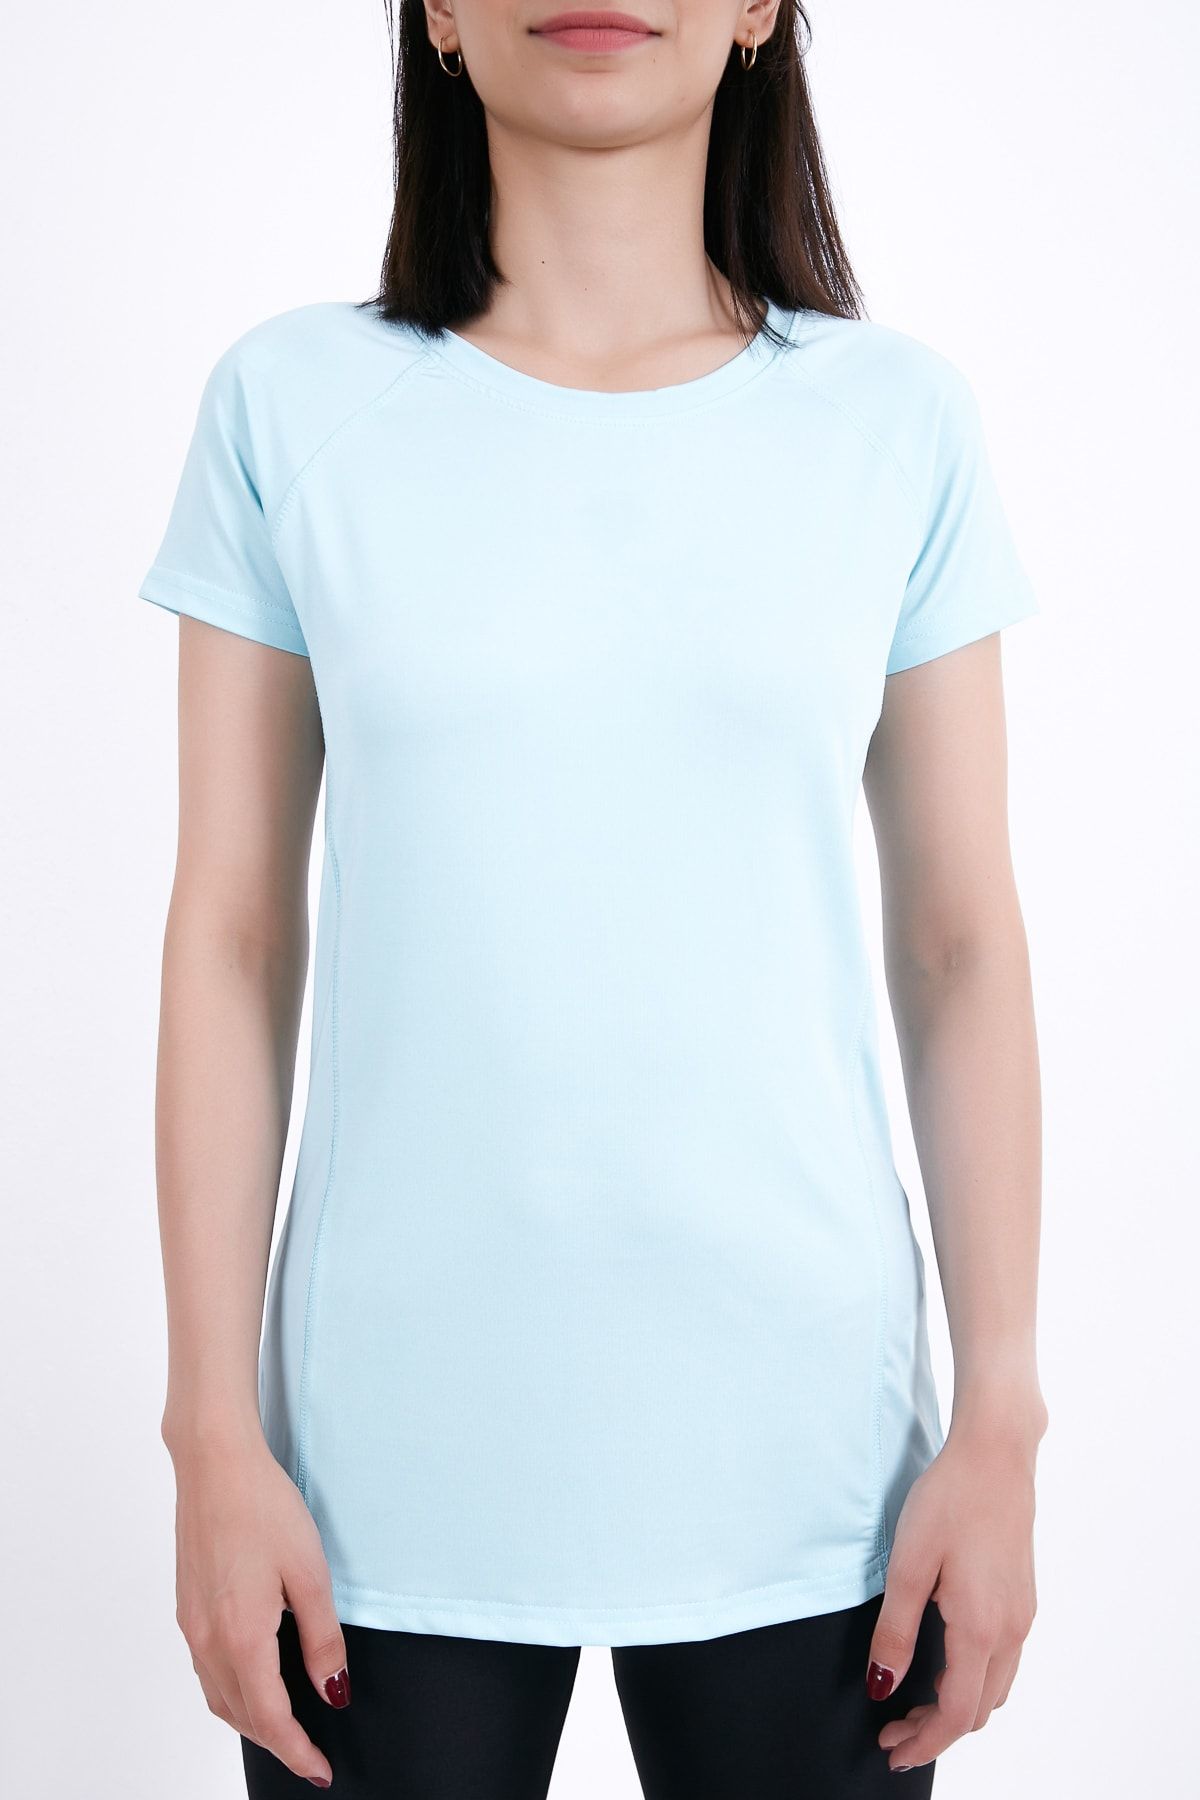 Runever Mint Slim Fit Kadın Spor T-shirt 49186-1